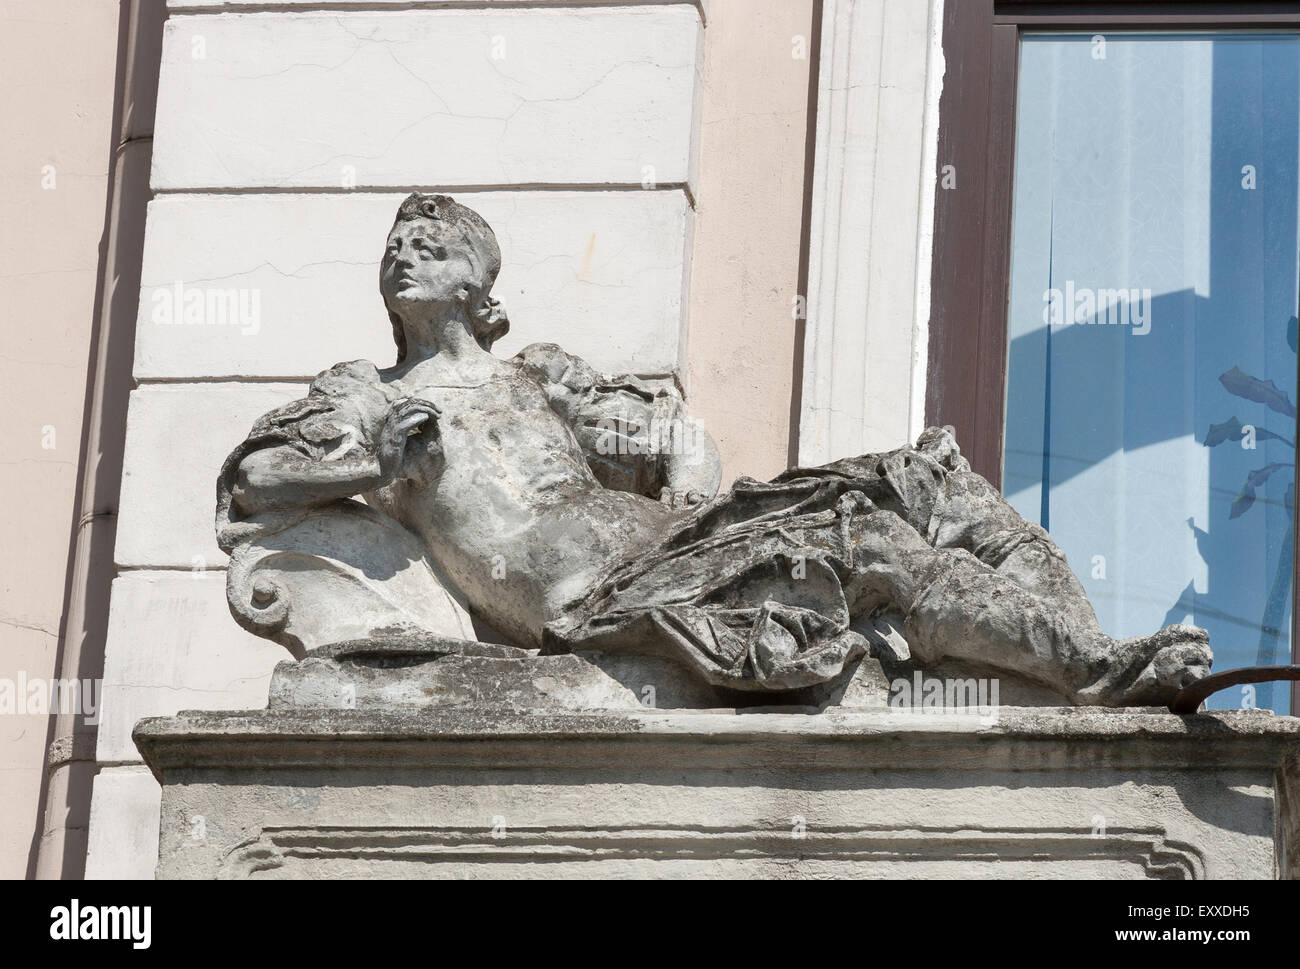 Frau liegend Statue, architektonische Details von Lemberg Altbau. Lviv ist eine Stadt in der Westukraine - Hauptstadt von Galizien historisch Stockfoto